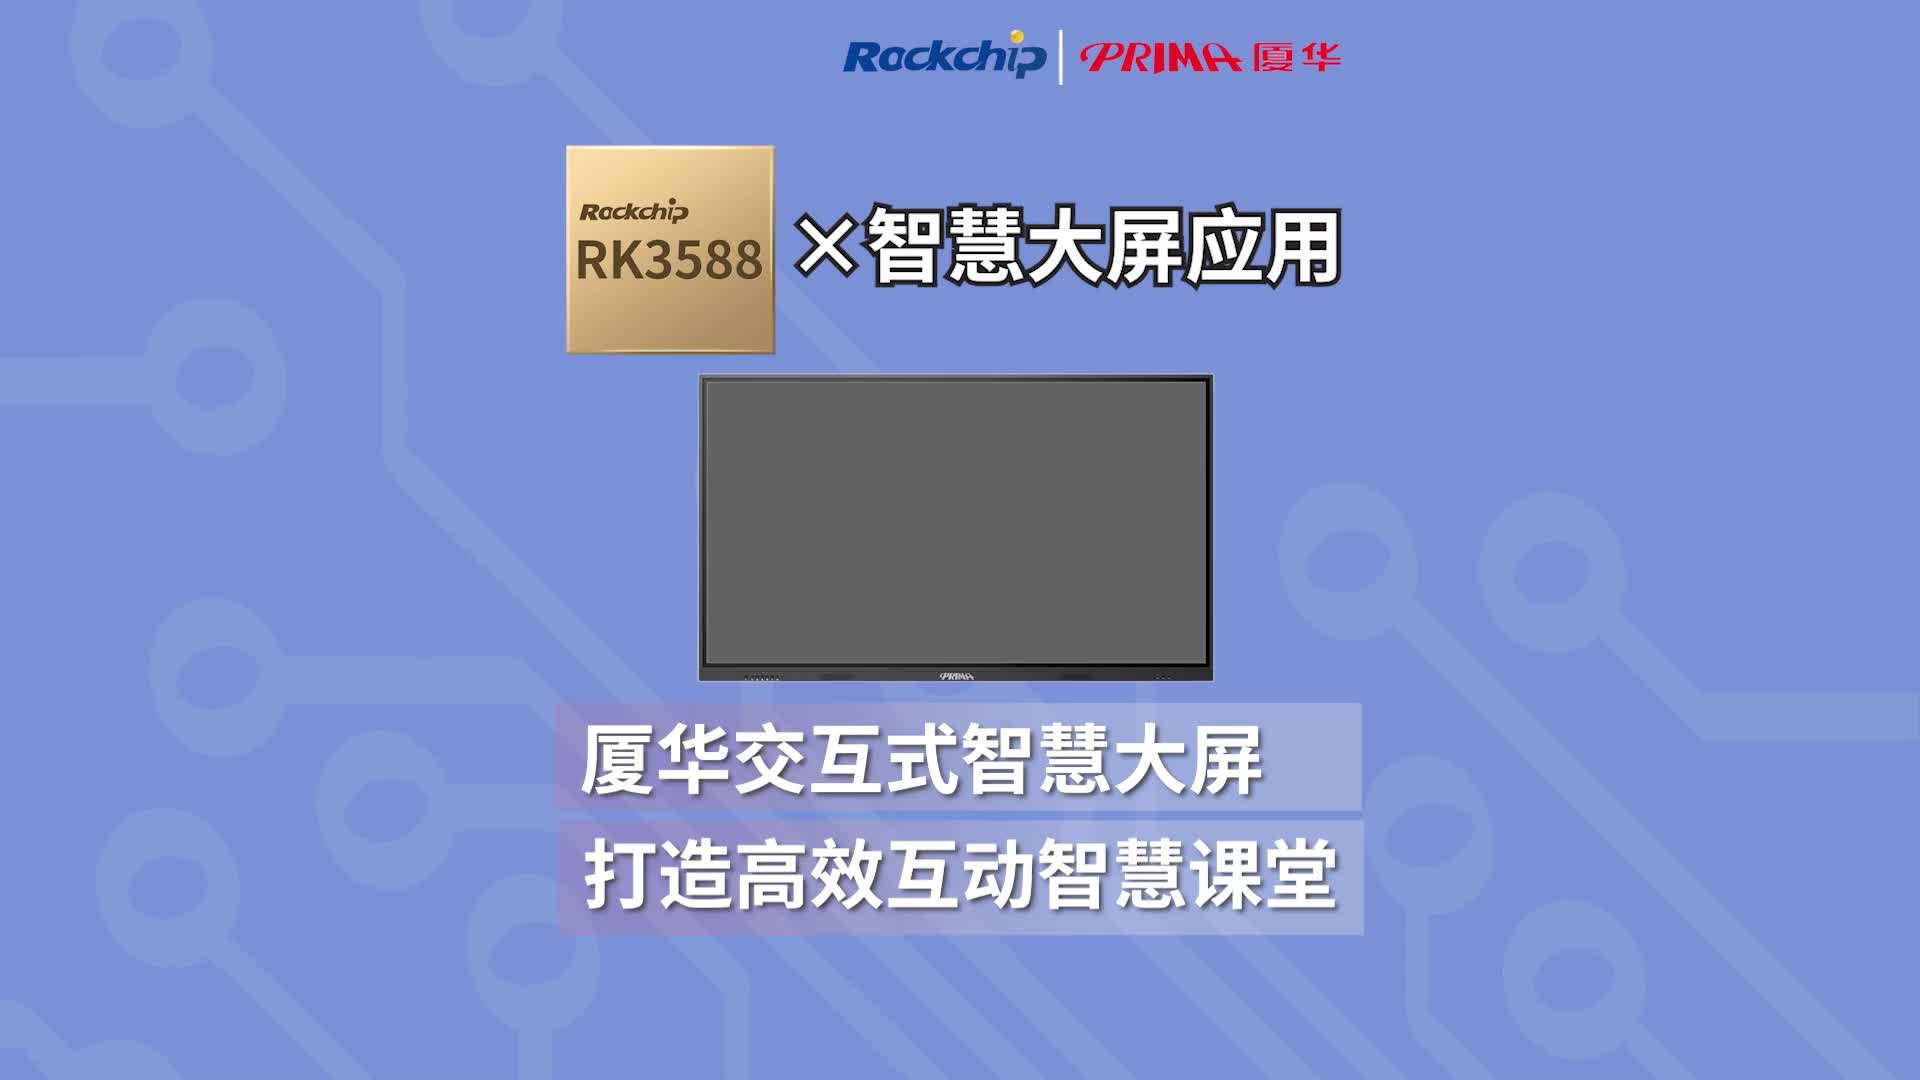 【RK3588终端案例】厦华交互式智慧大屏 打造高校互动智慧课 
#瑞芯微 #RK3588 #智慧教育 